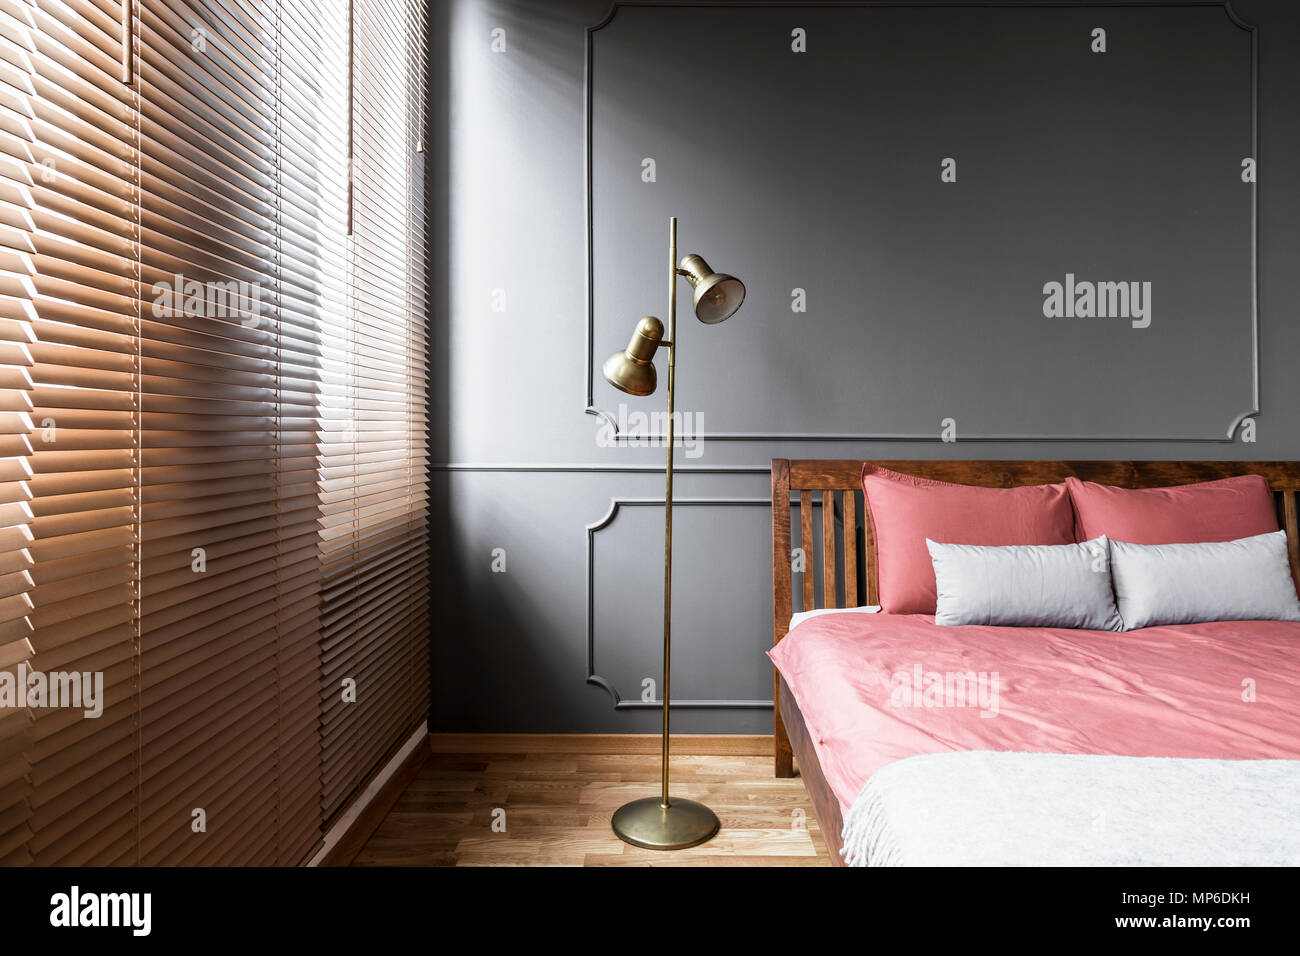 Jalousien und golden Lampe in dunklen und eleganten Schlafzimmer Innenraum  mit rosa Blätter auf einem Bett aus Holz und Kante an der Wand. Real Photo  Stockfotografie - Alamy